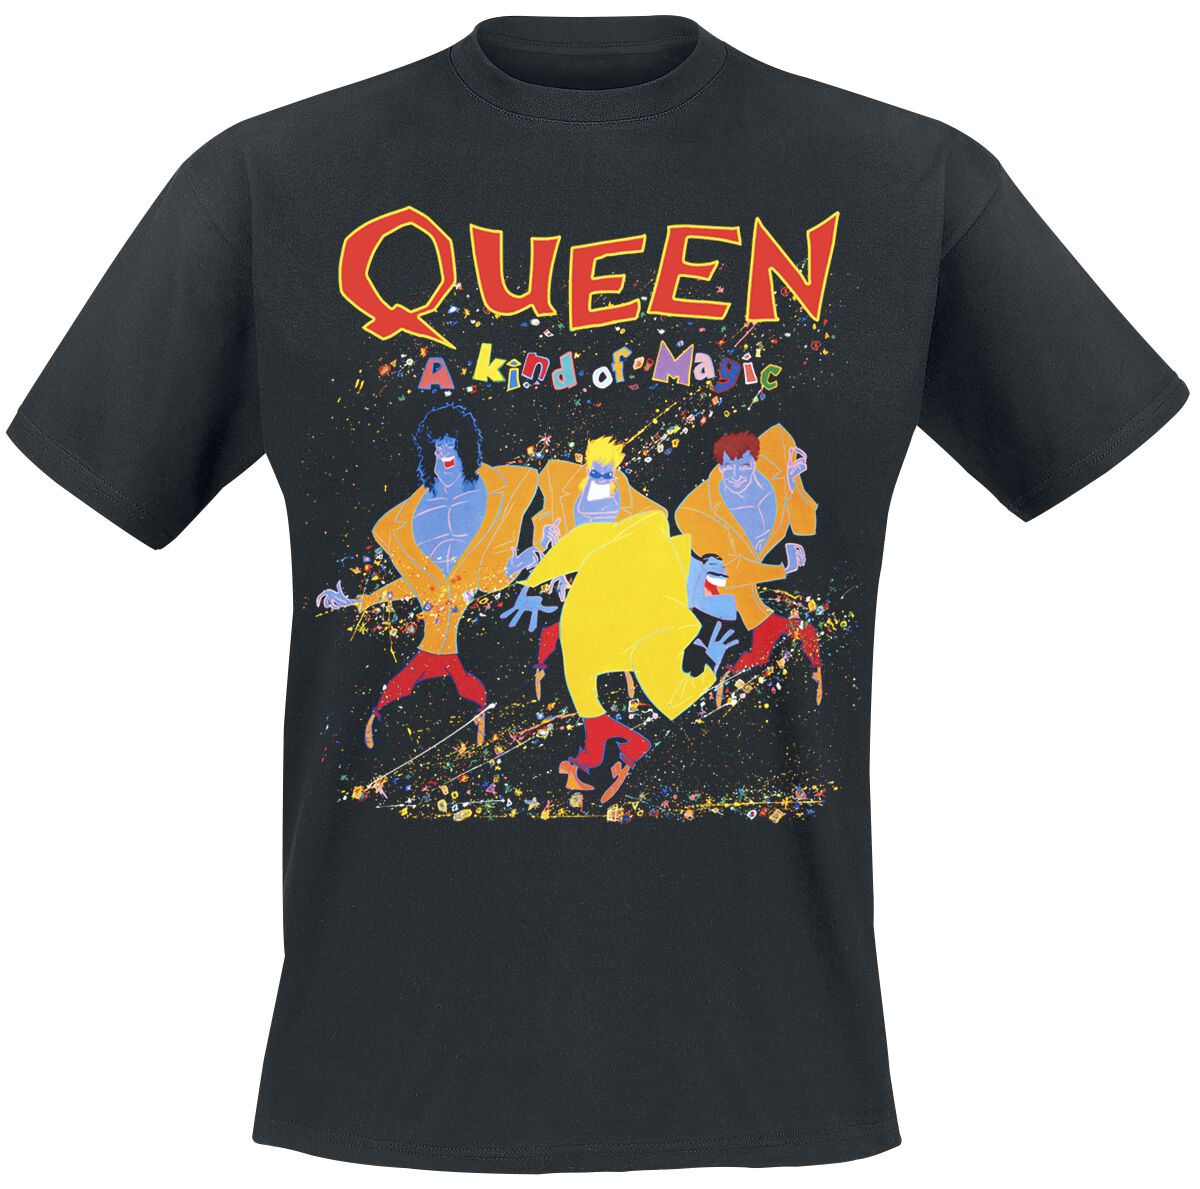 Queen T-Shirt - A Kind Of Magic - S bis 5XL - für Männer - Größe XXL - schwarz  - Lizenziertes Merchandise!